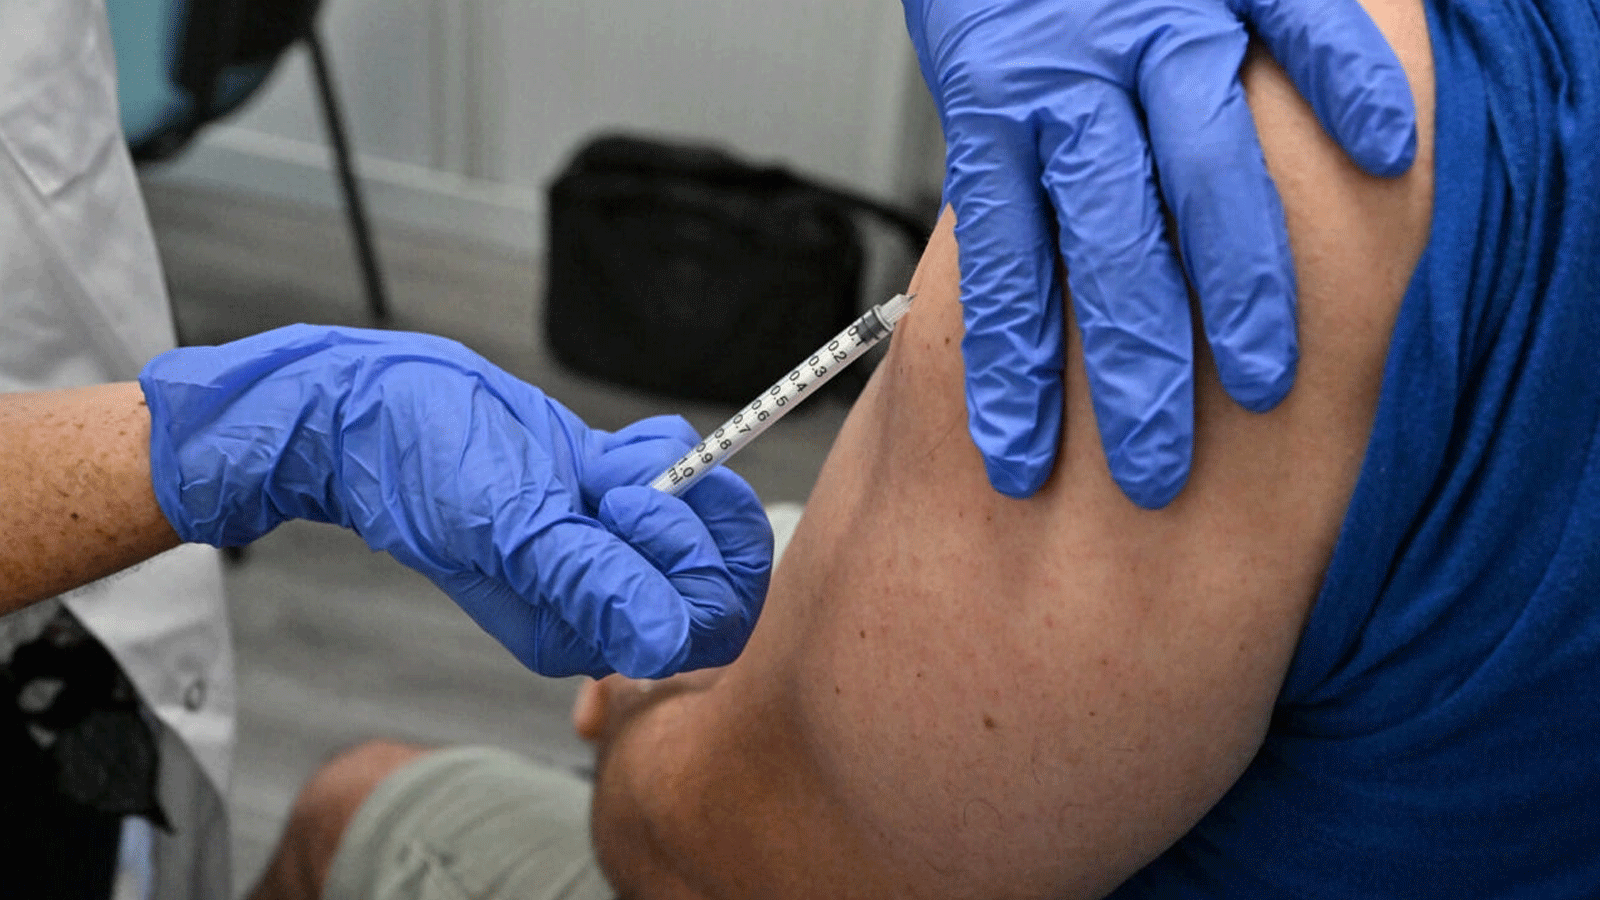  الصحة العامة في بريطانيا: اللقاح المضادّ لجدري القردة فعّال بنسبة 78 في المئة